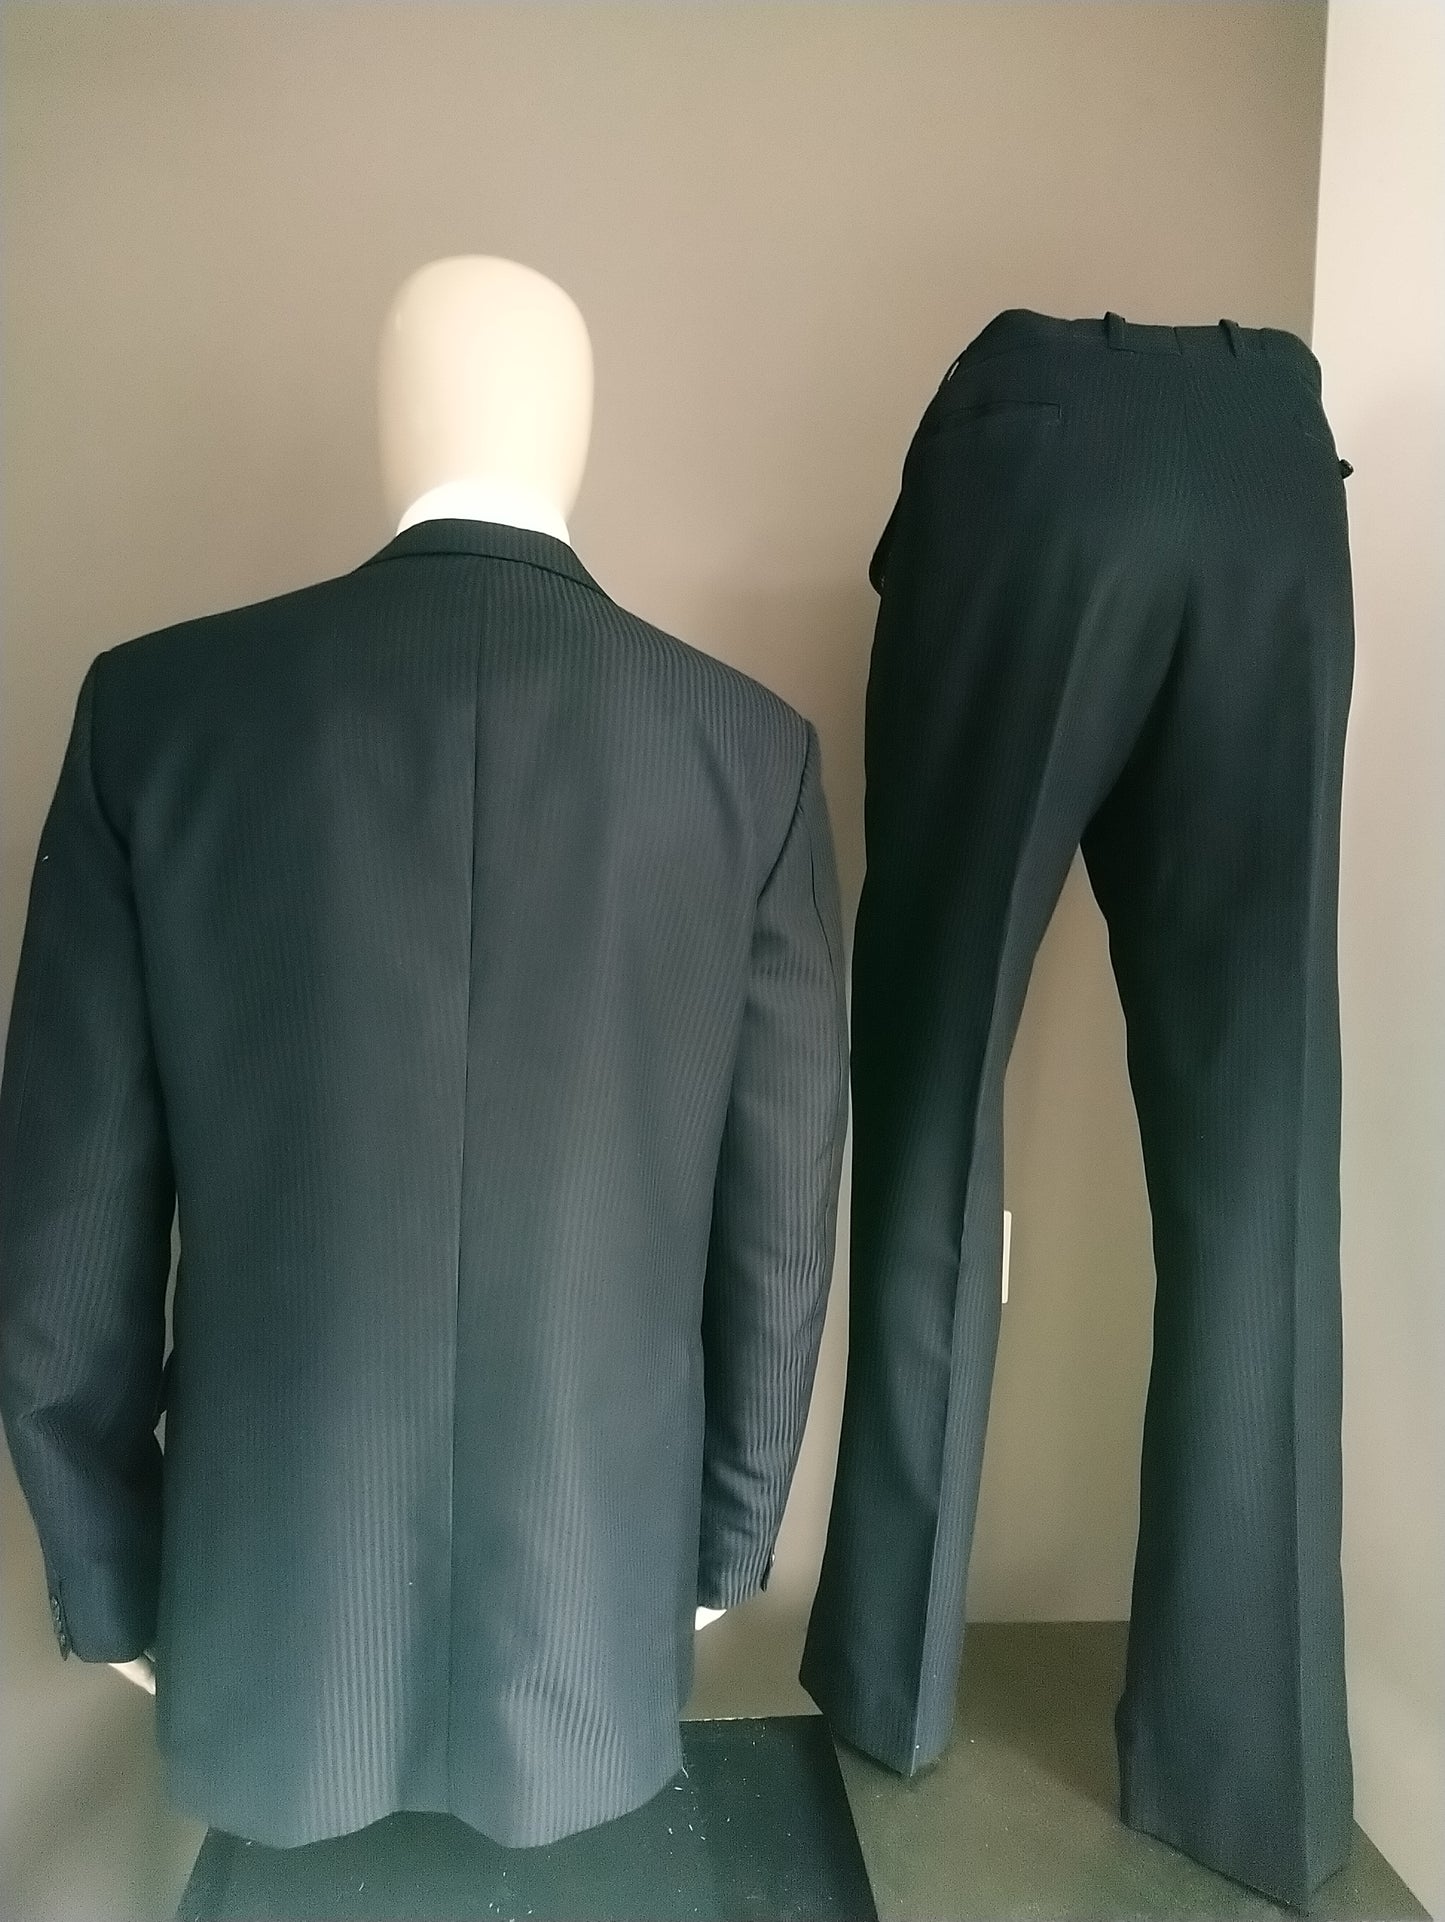 Schwarzer glänzender gestreifter Anzug. Größe 52. Regelmäßige Passform